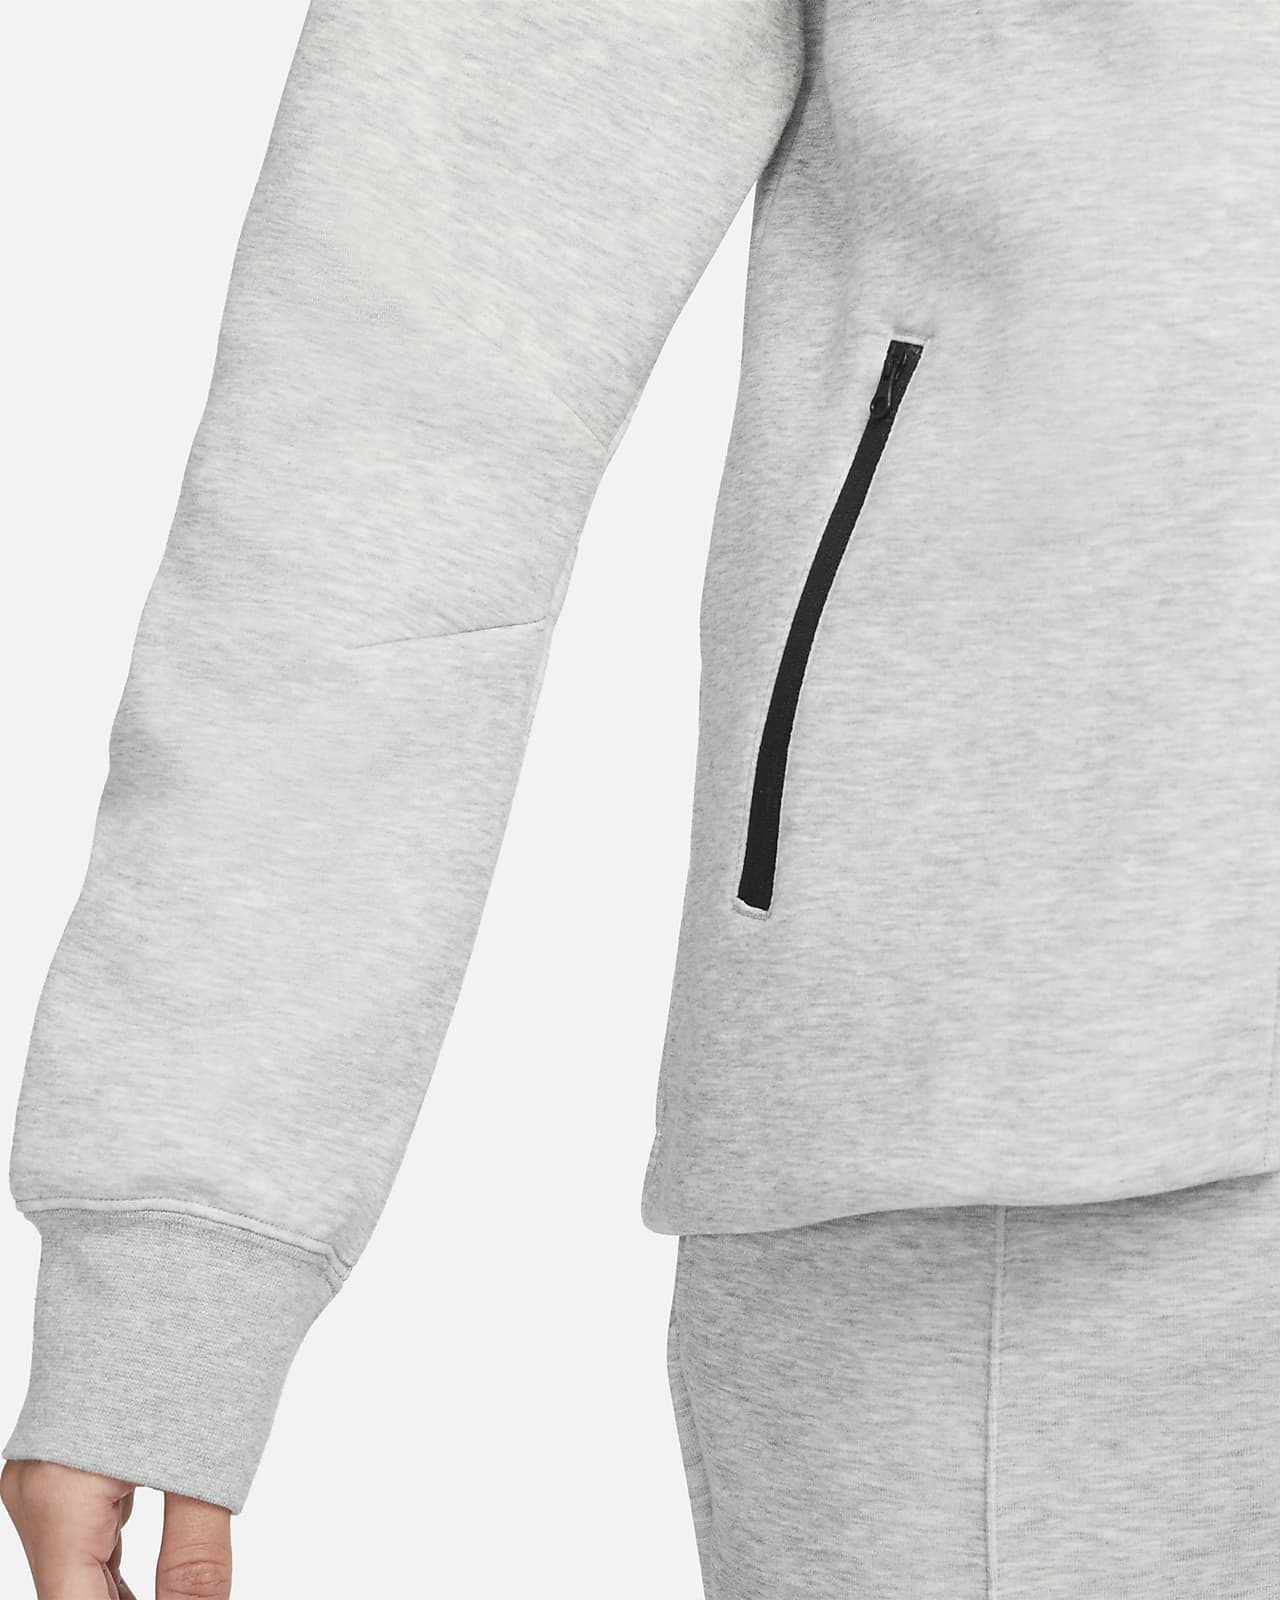 Nike Sportswear Tech Fleece Windrunner Women's Full-Zip Hoodie (Plus Size)